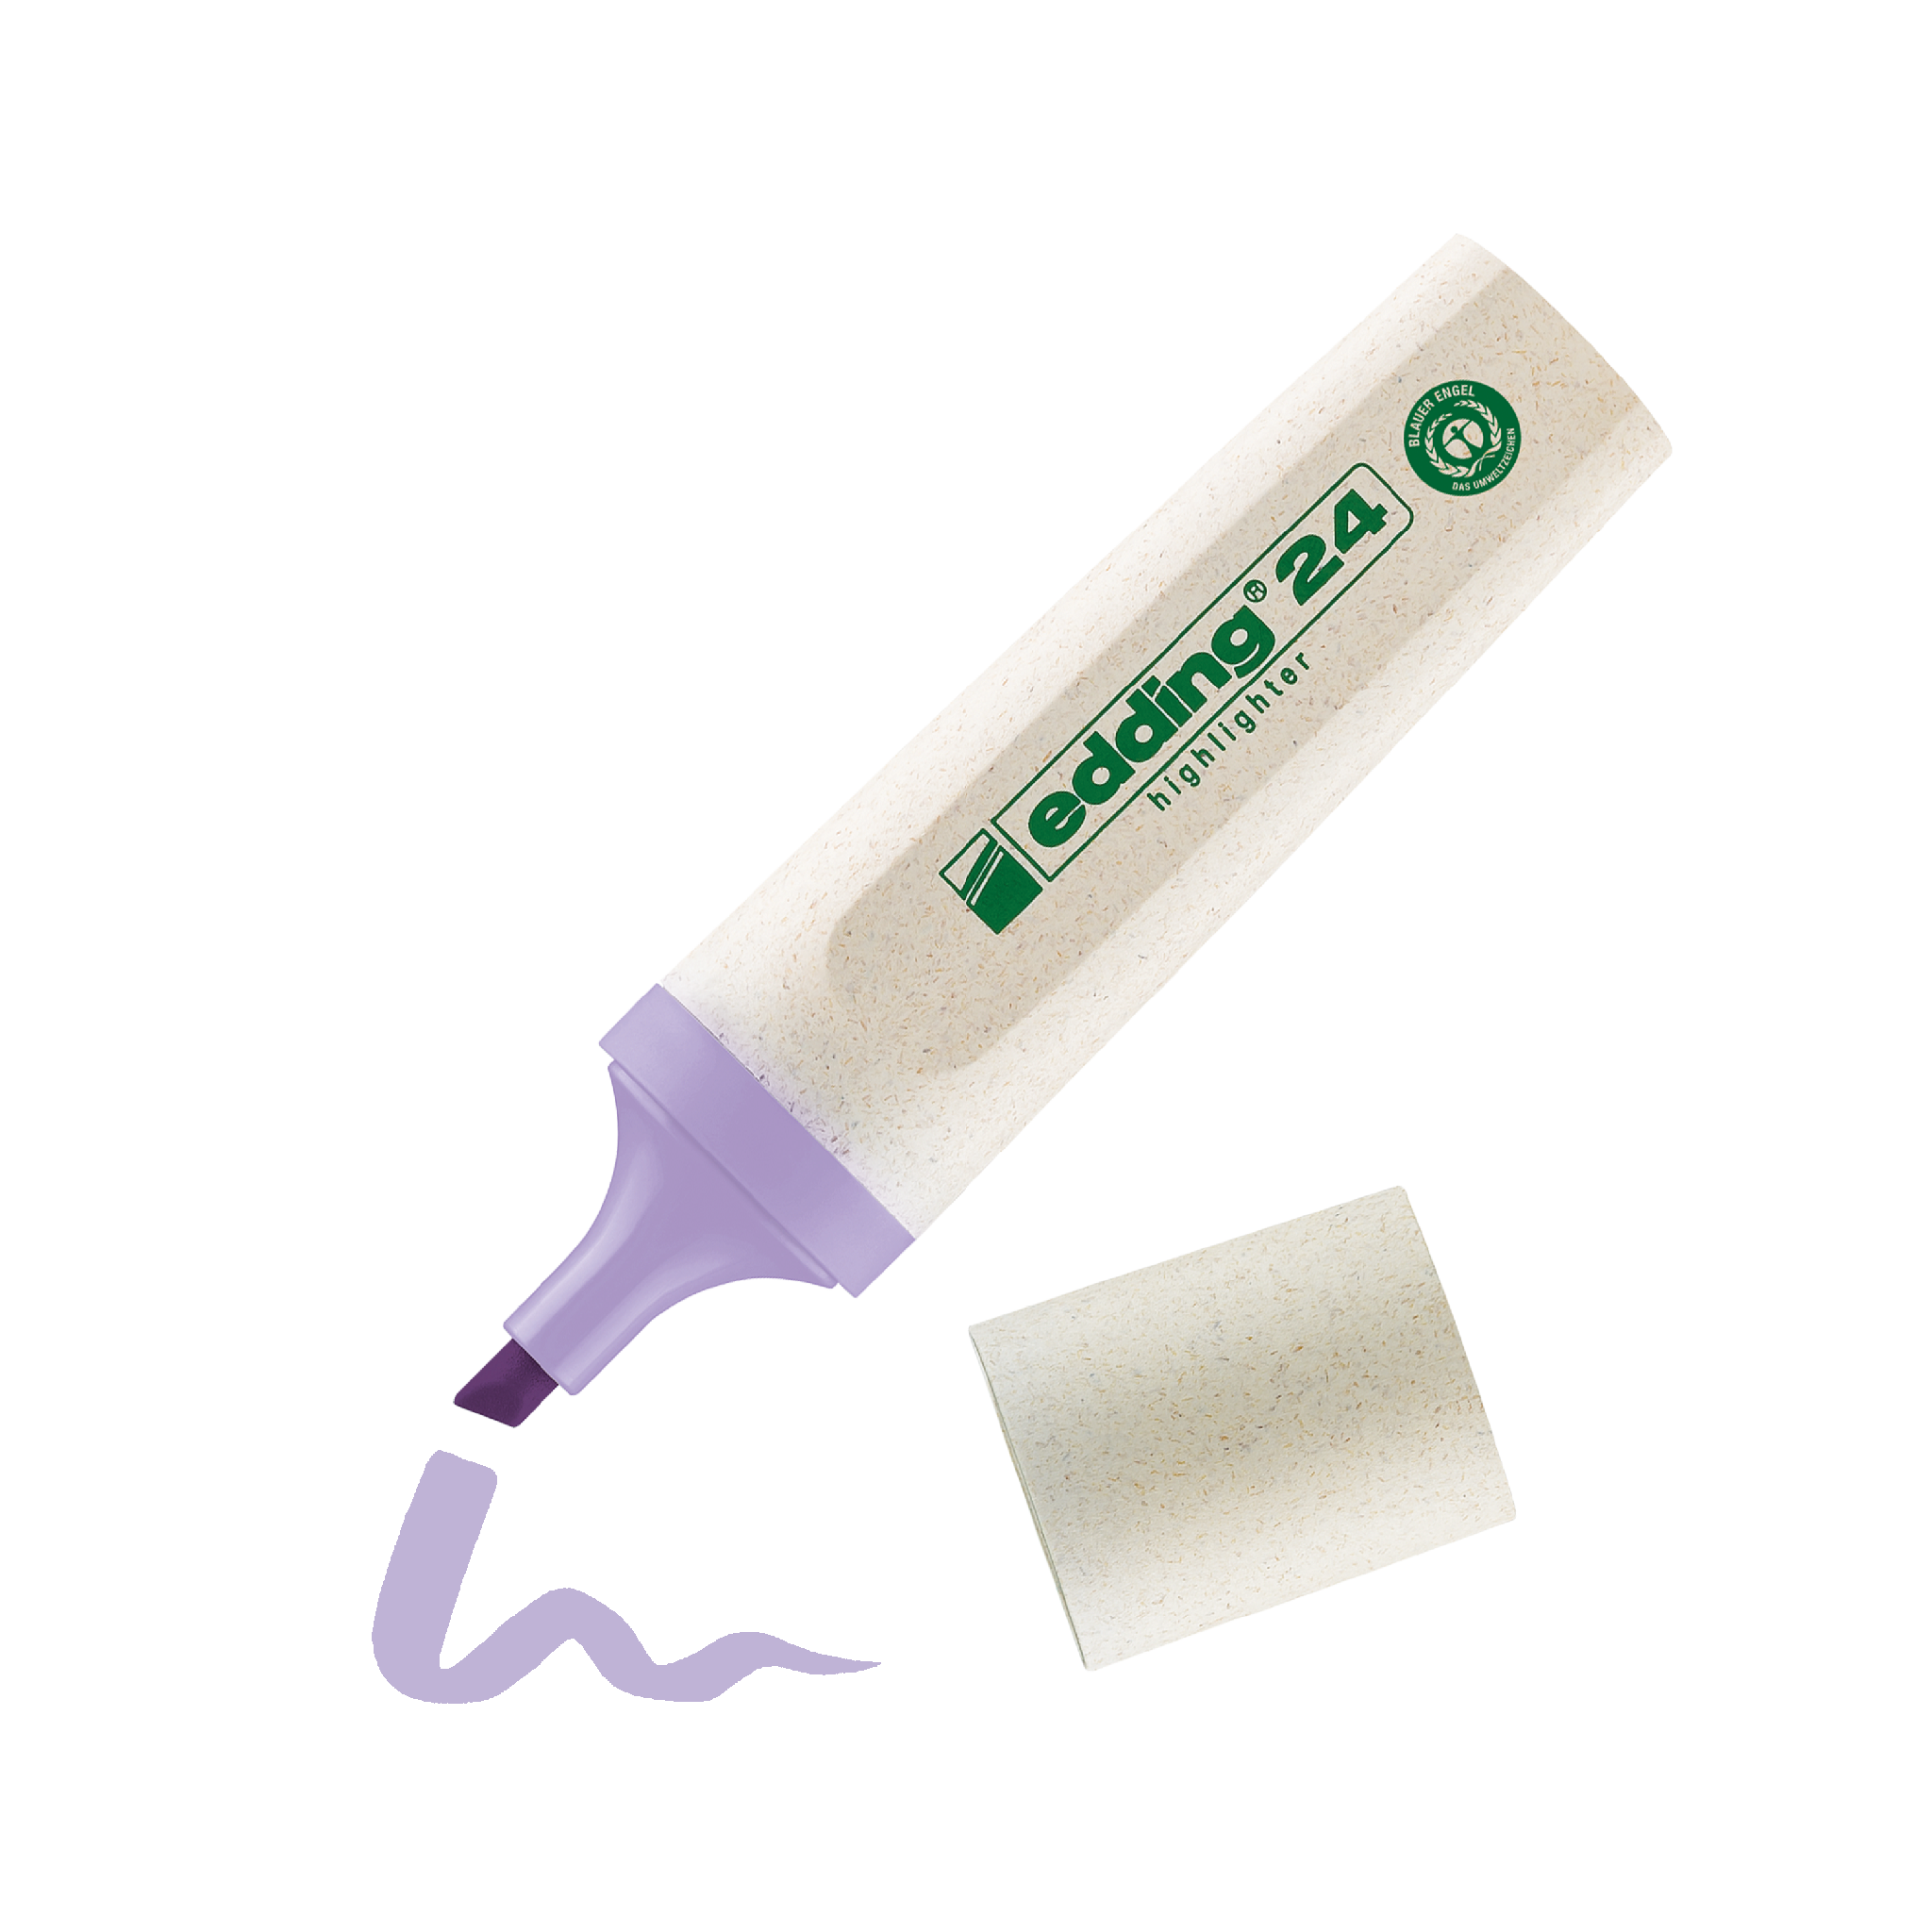 Ein umweltfreundlicher edding 24 EcoLine Textmarker mit lavendelfarbener Spitze ohne Kappe, der neben einem Farbmuster seiner violetten Tinte auf weißem Hintergrund liegt.